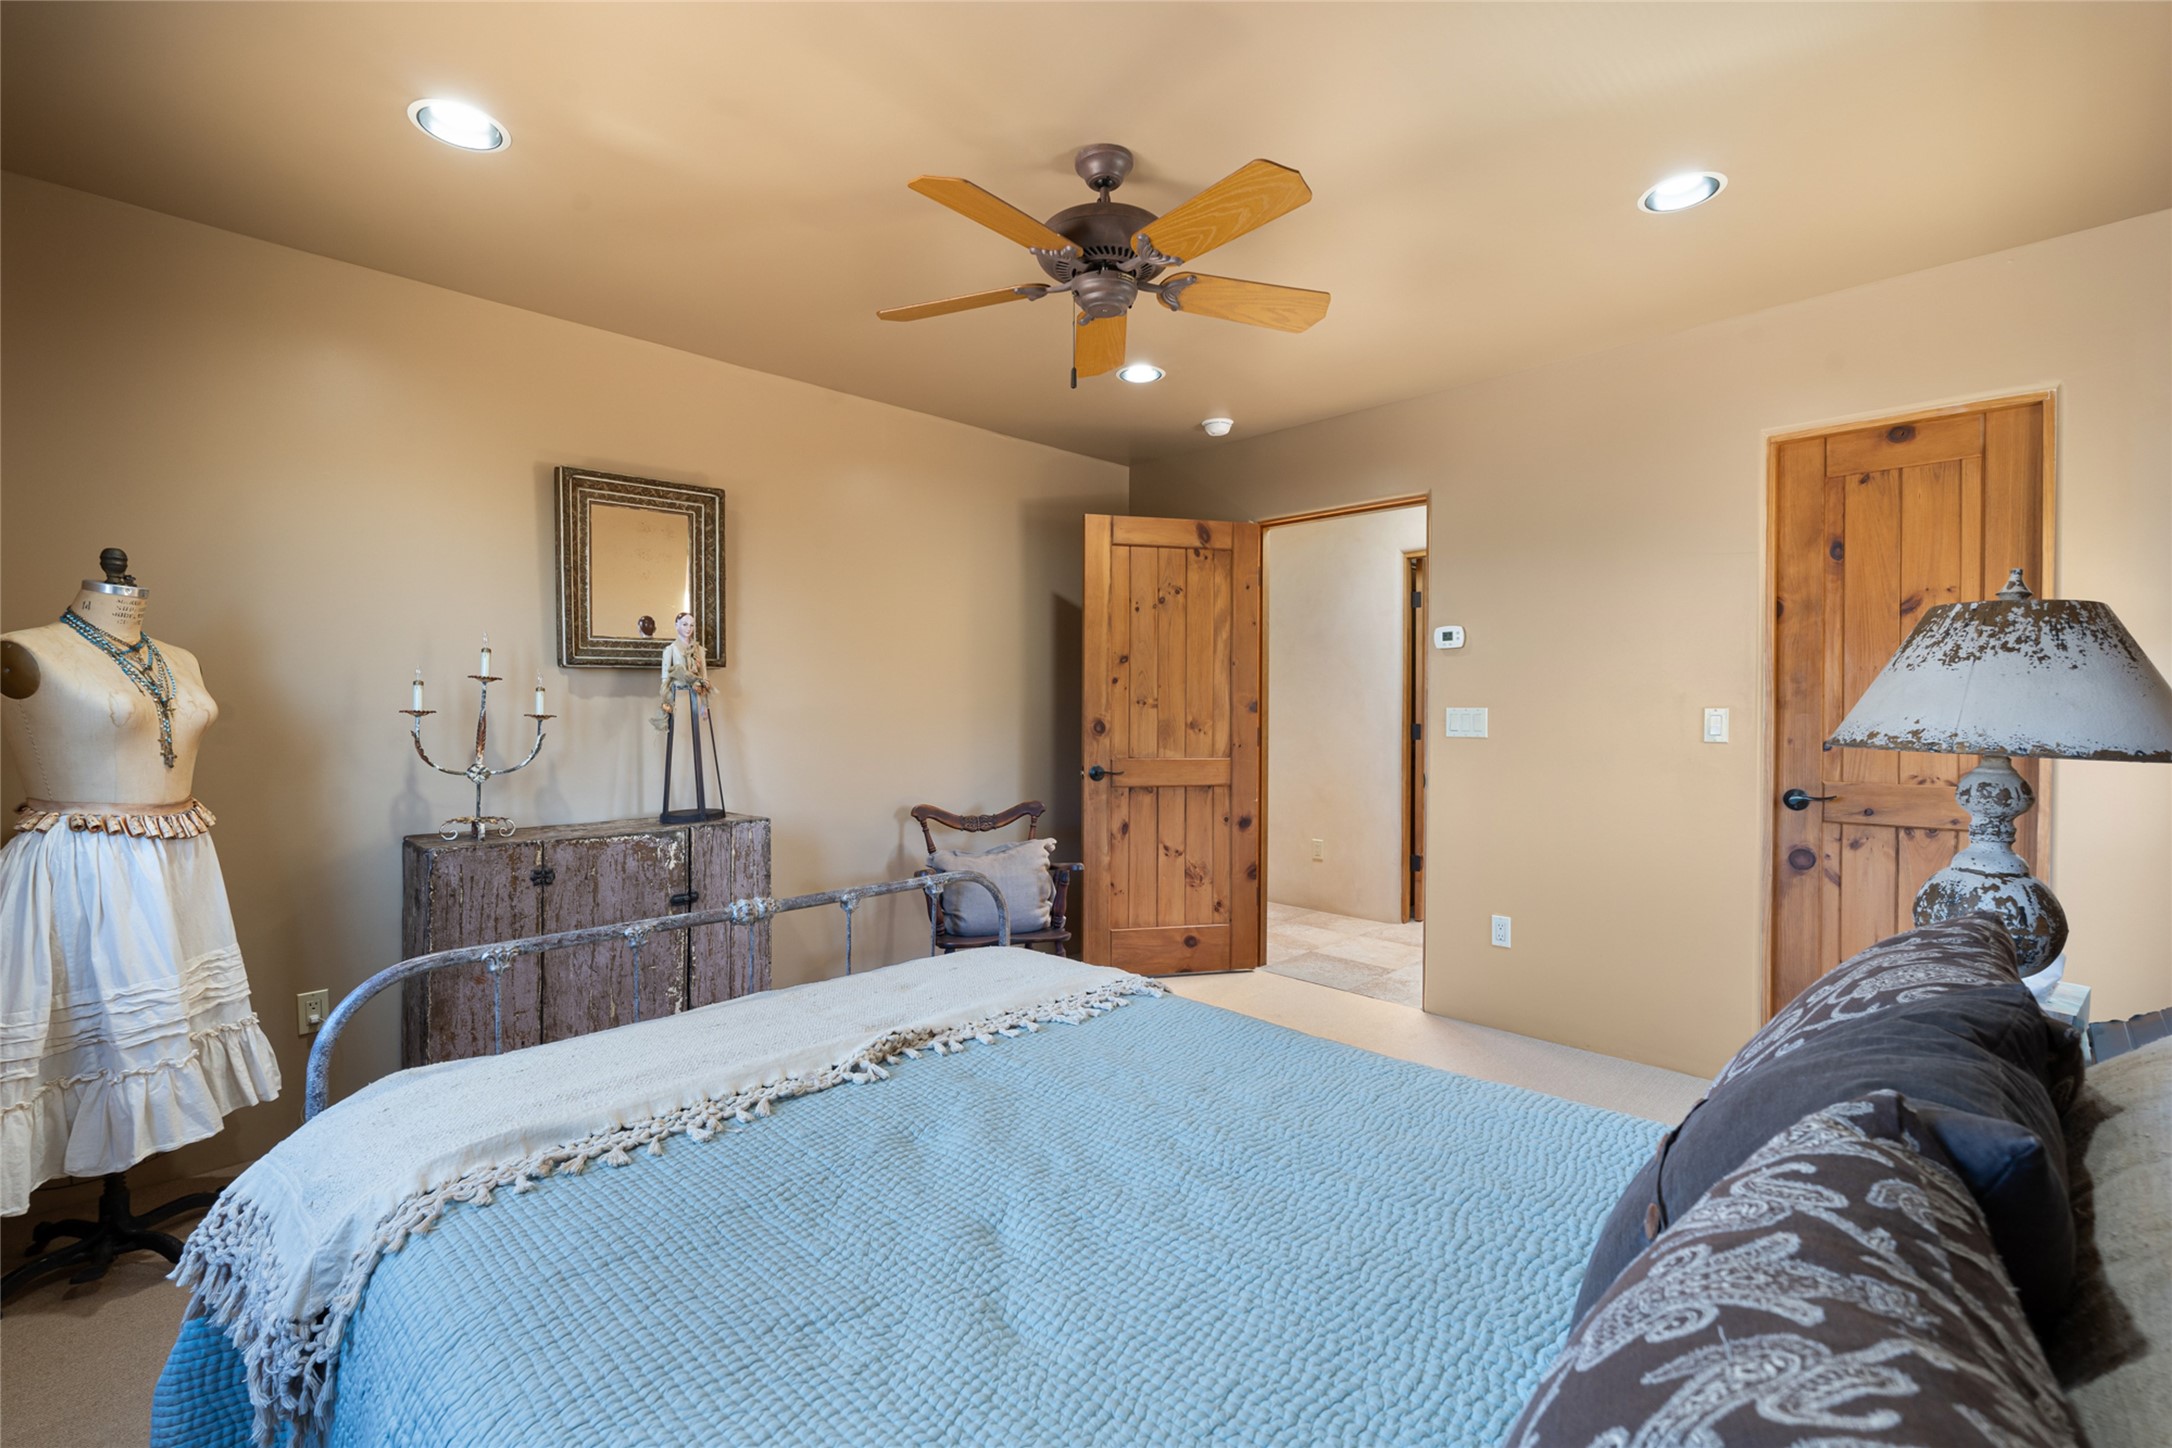 2614 Sol Y Nubes, Santa Fe, New Mexico 87505, 4 Bedrooms Bedrooms, ,3 BathroomsBathrooms,Residential,For Sale,2614 Sol Y Nubes,202400639